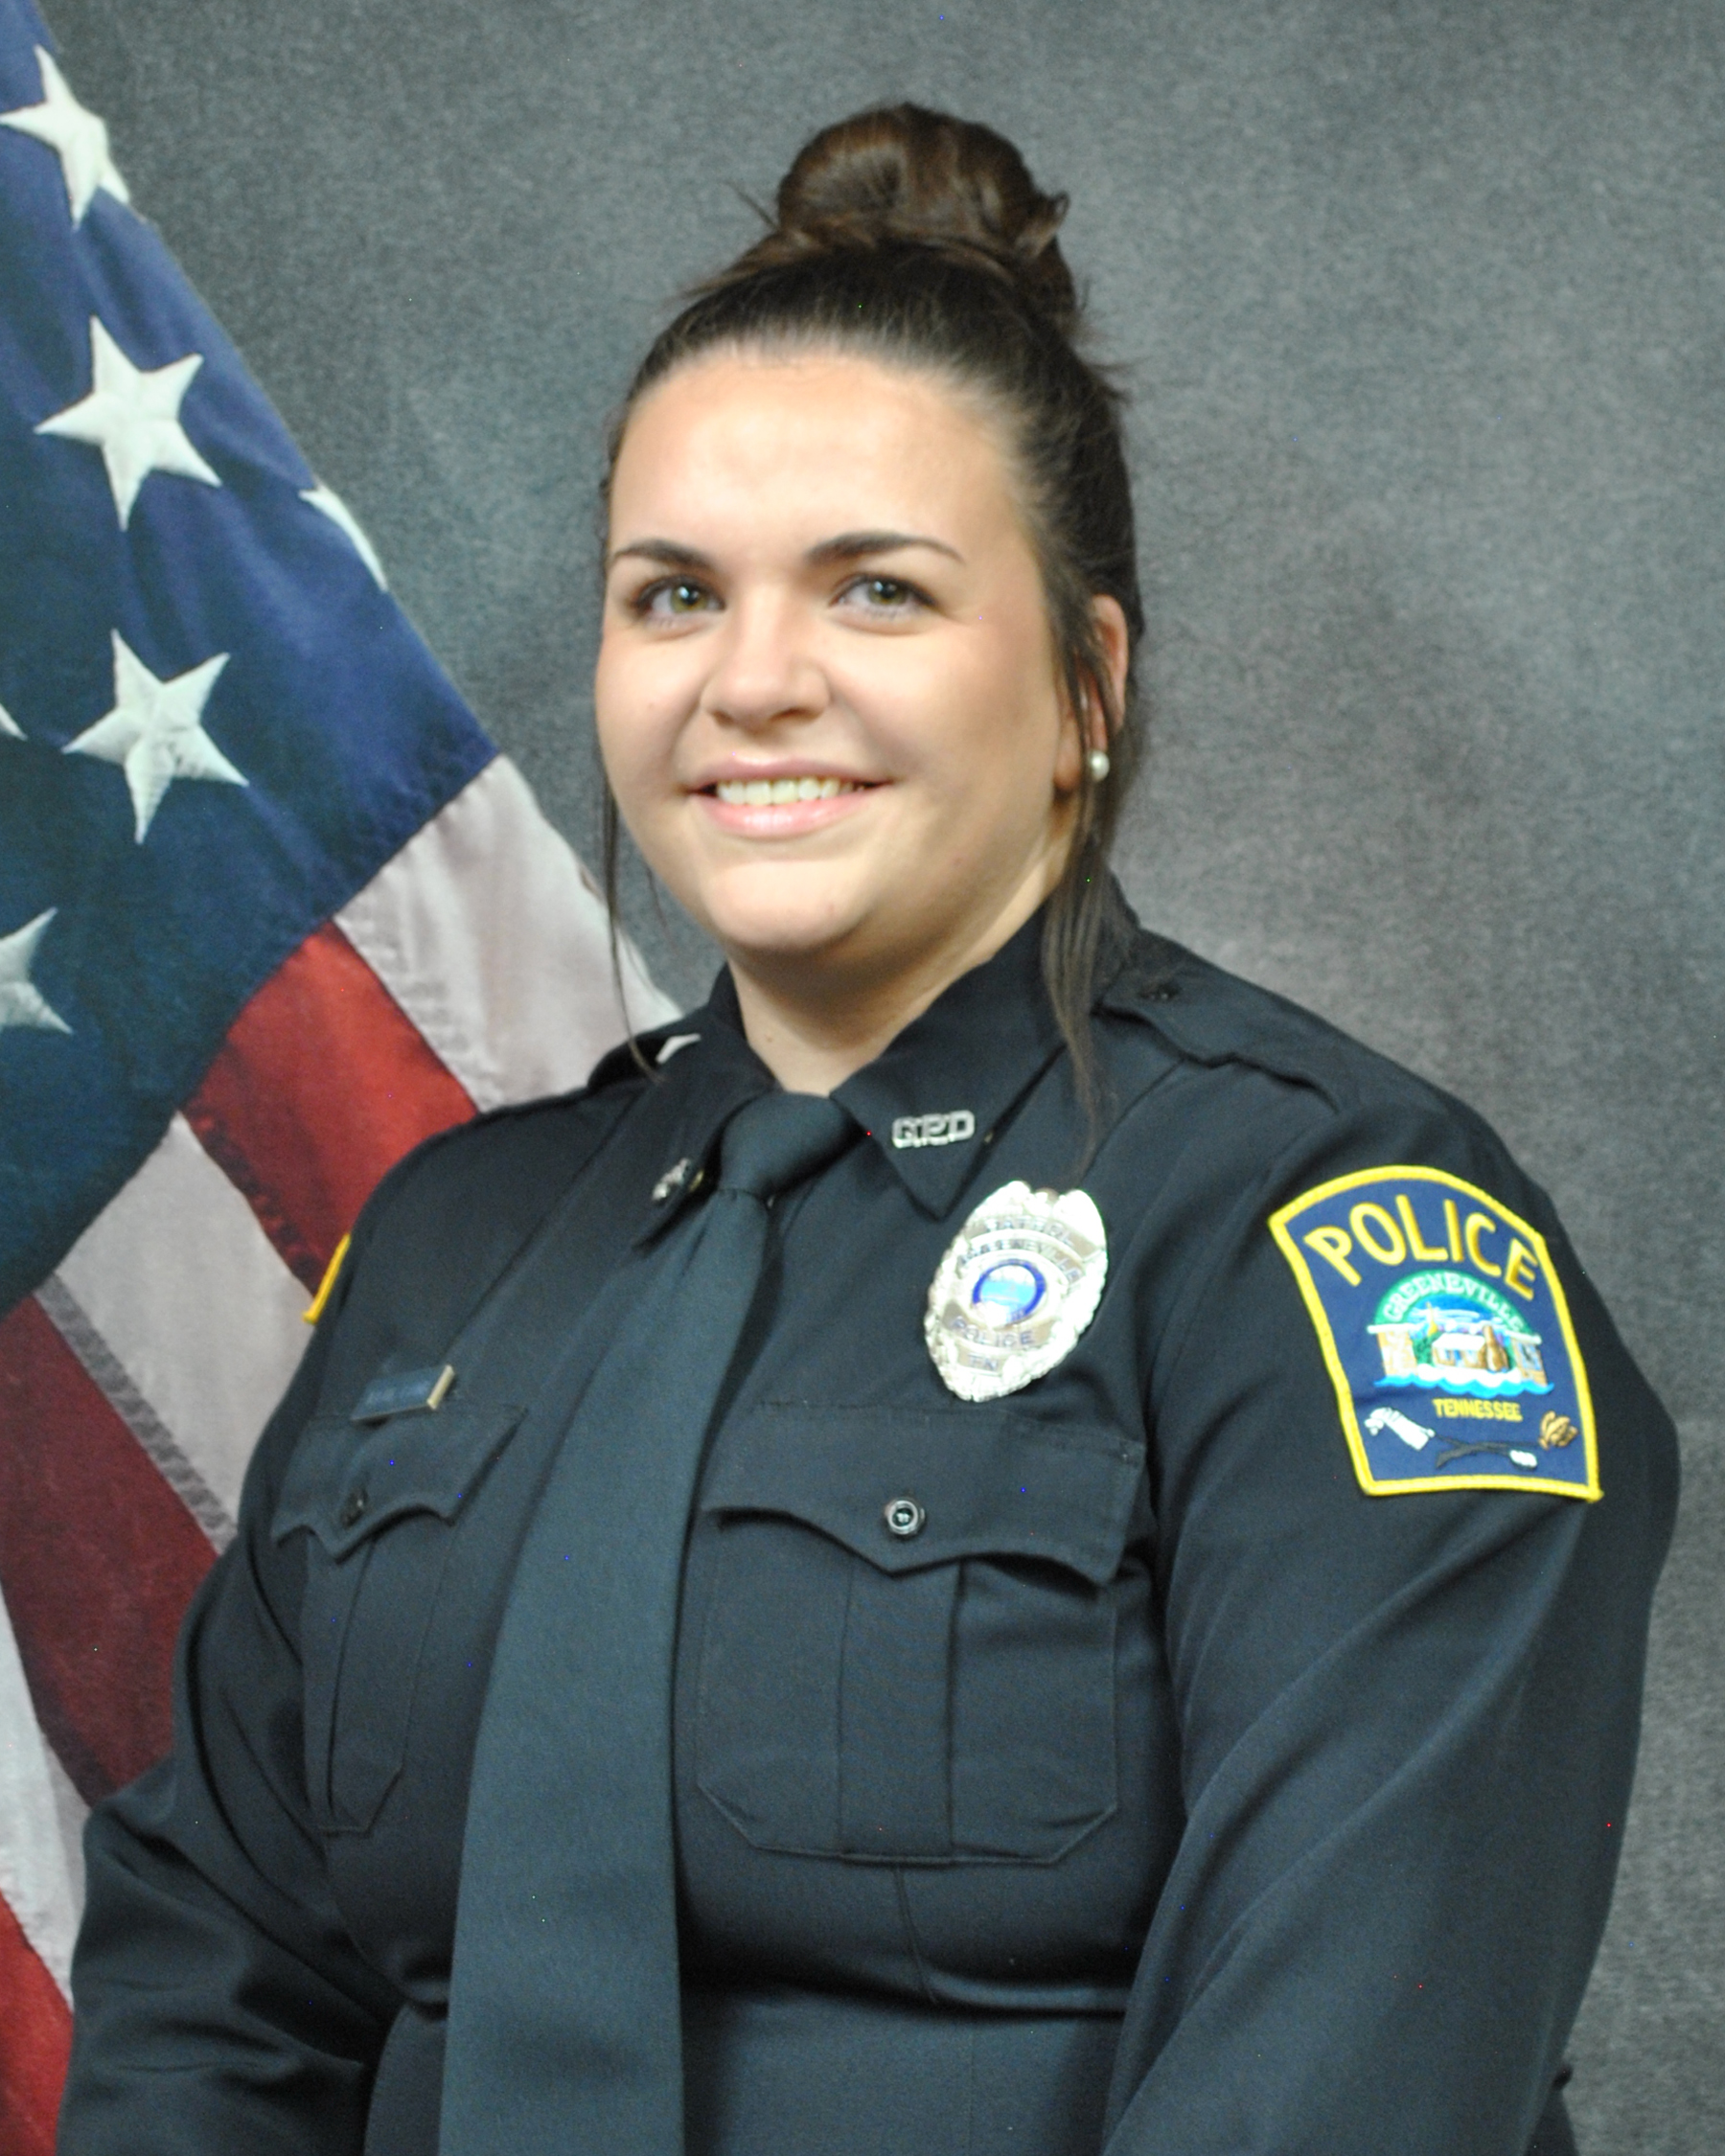 Officer Katlyn Lamb